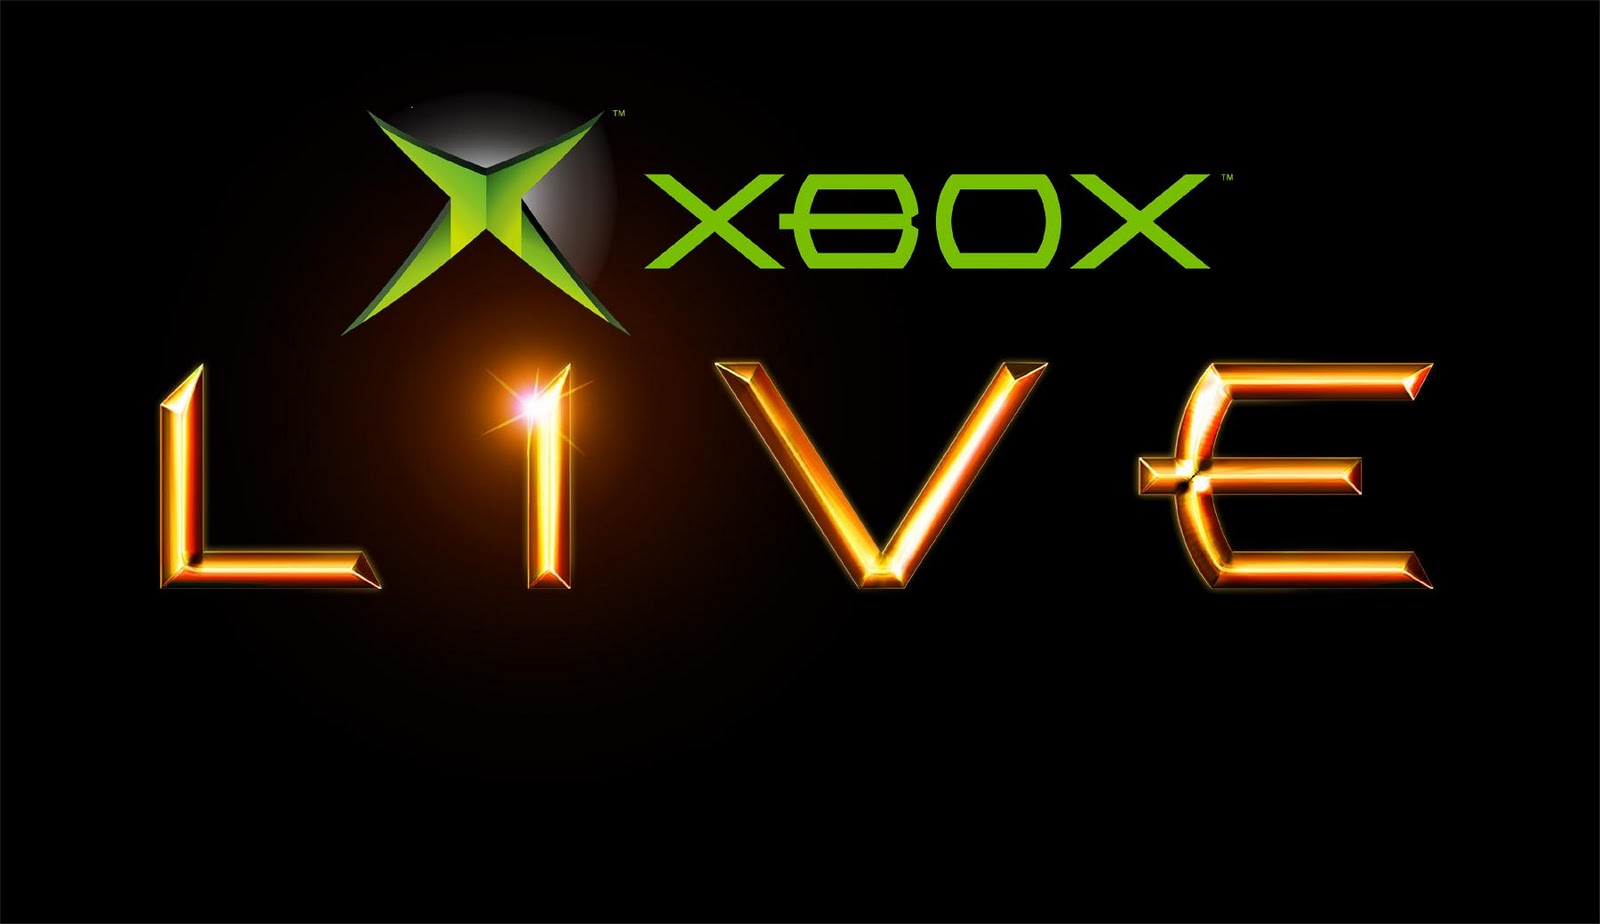 Xbox Live – 10 Years of Fun